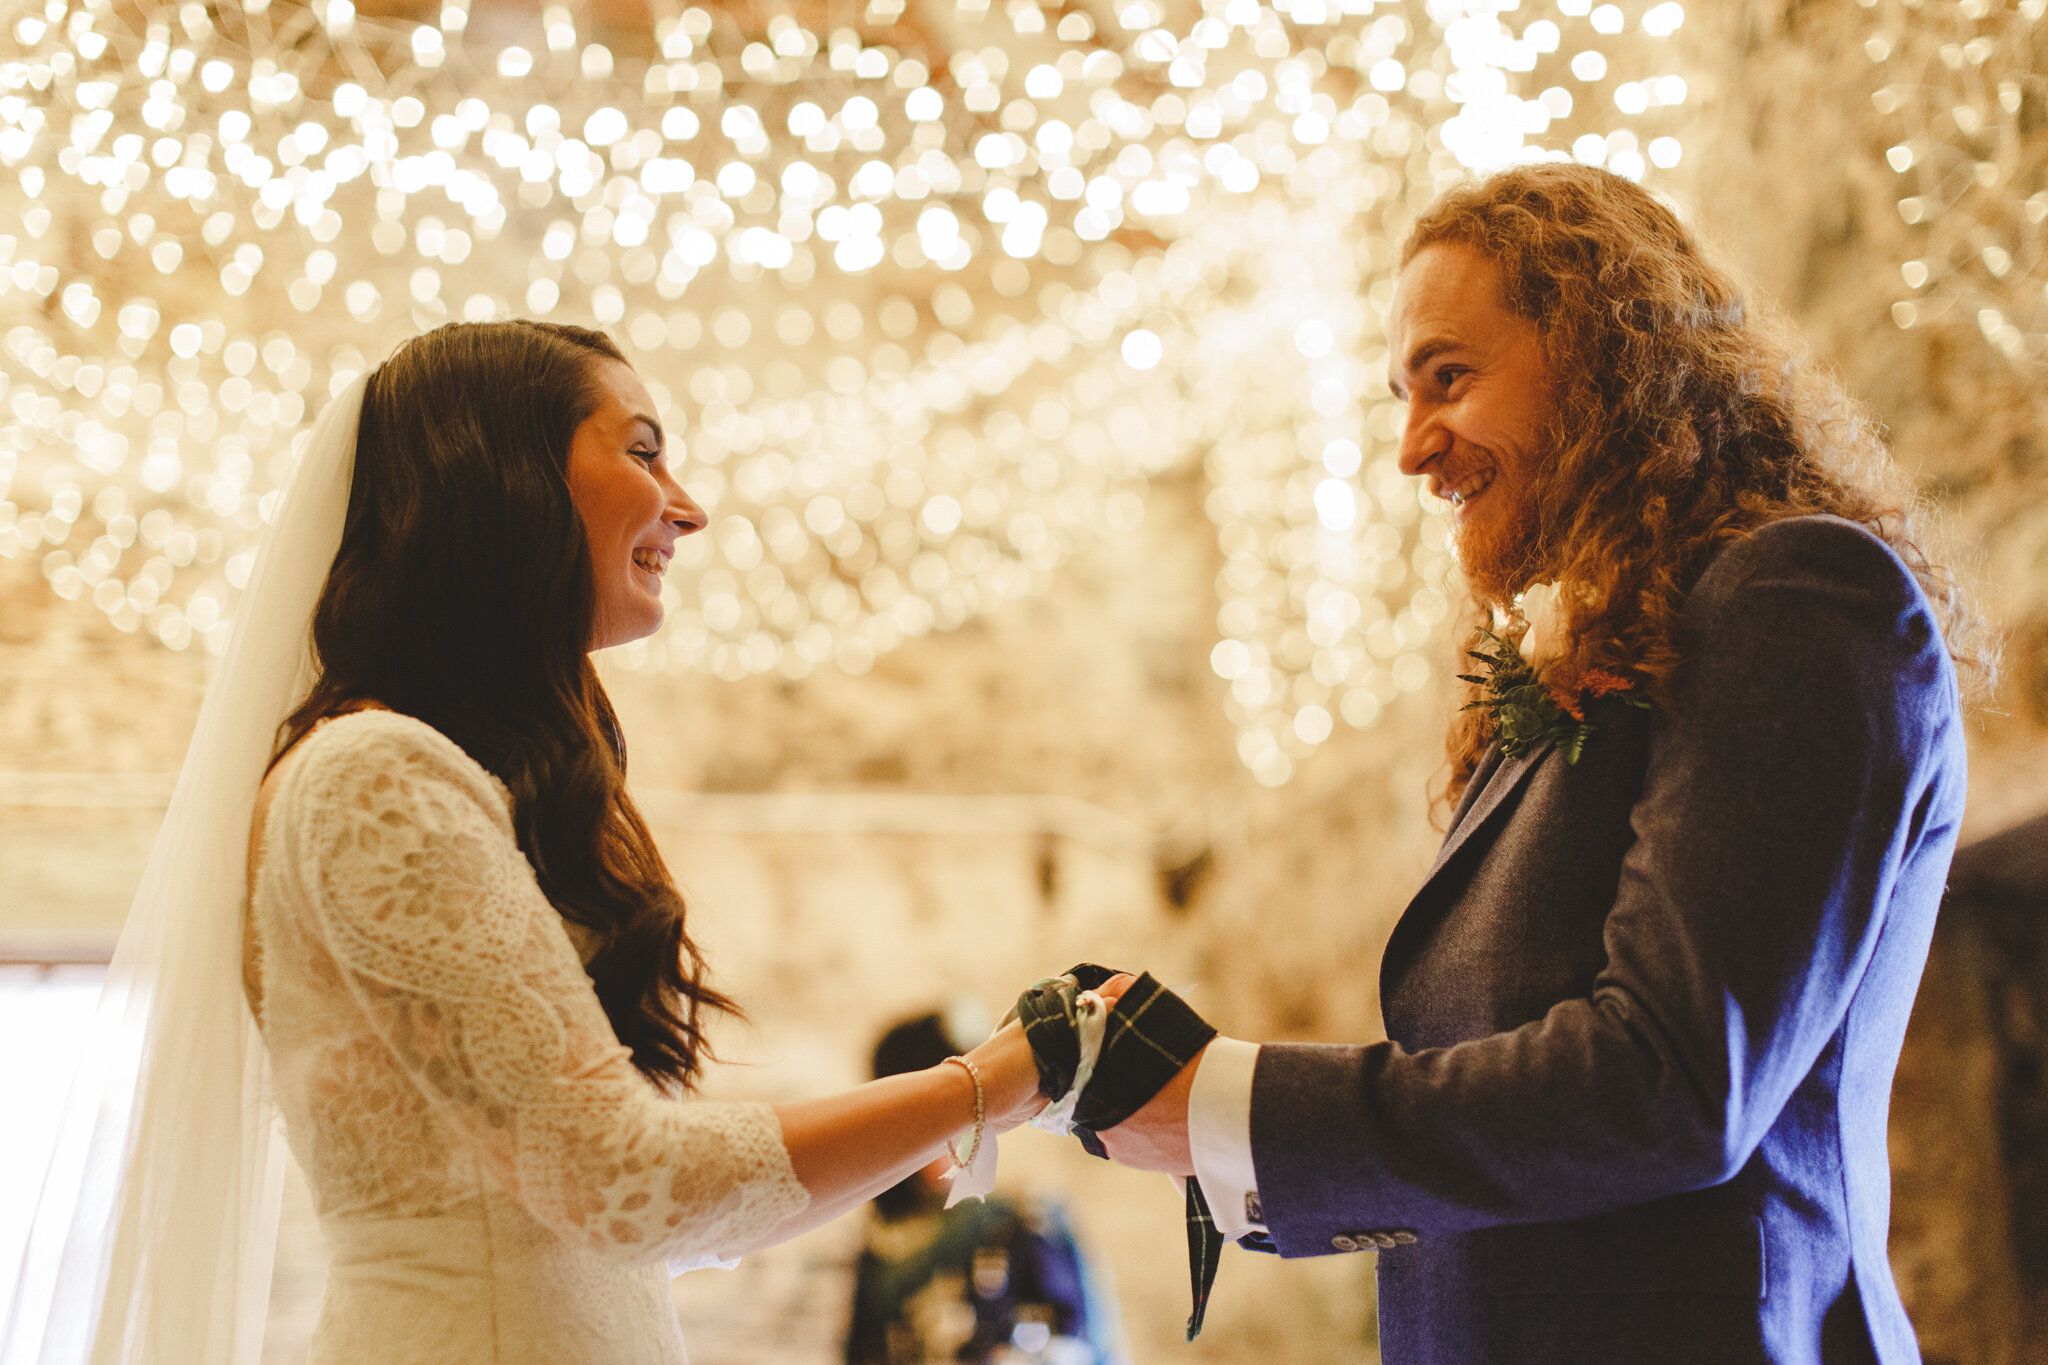 derbyshire-wedding-elopement-photographer-best-2020-150.jpg